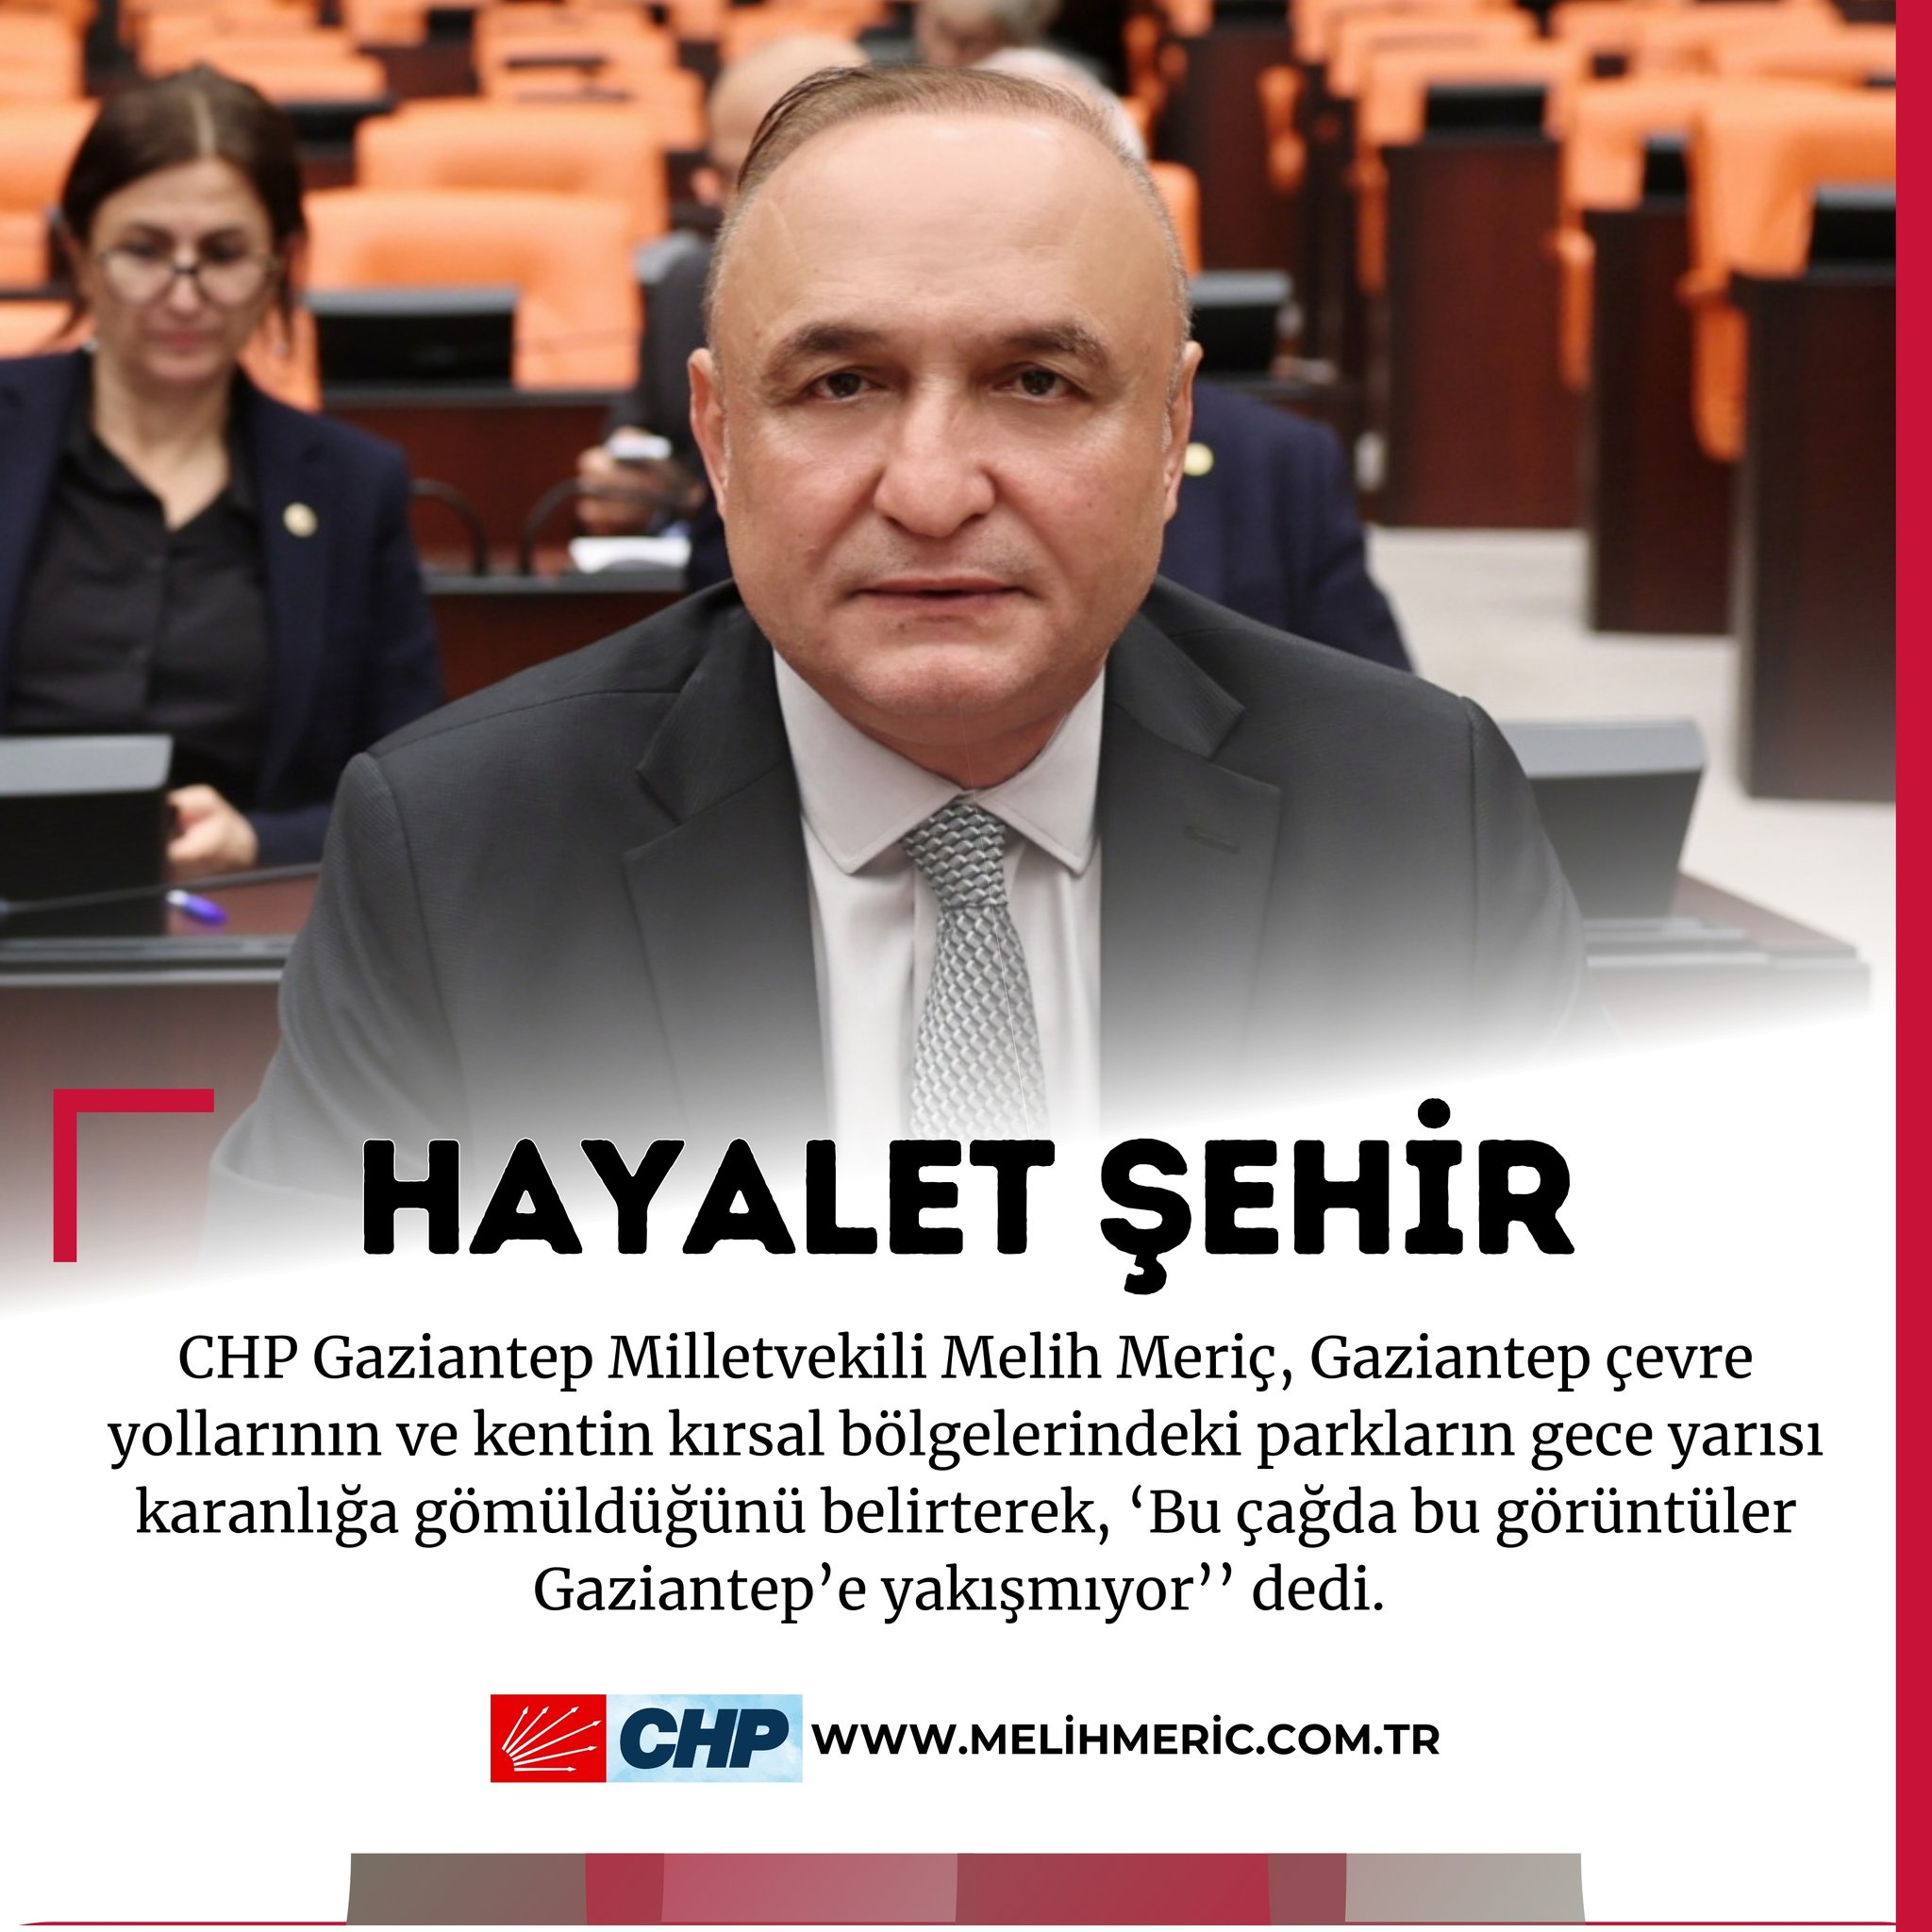 Melih MERİÇ | 28. Dönem CHP Gaziantep Milletvekili - HAYALET ŞEHİR